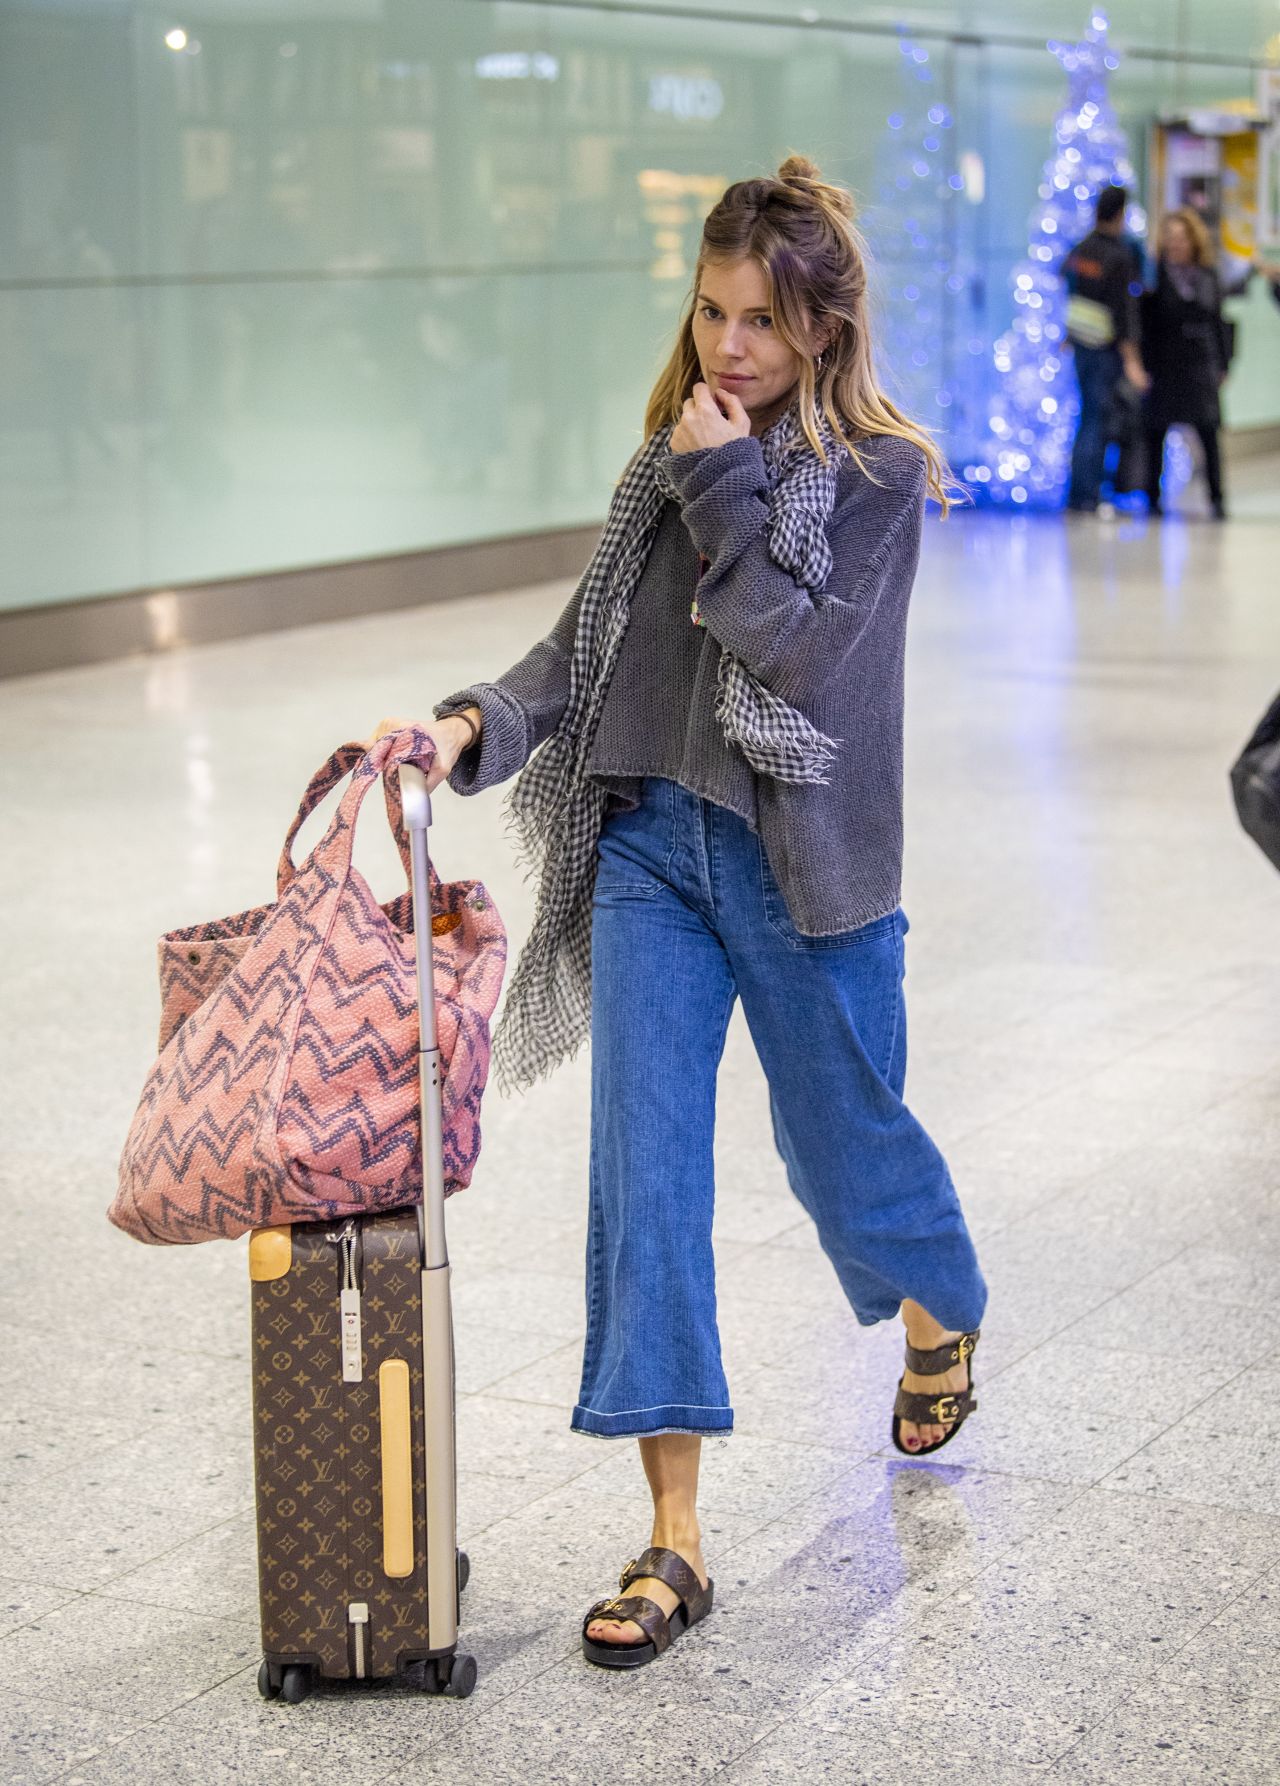 Sienna Miller Heathrow Airport December 27, 2018 – Star Style